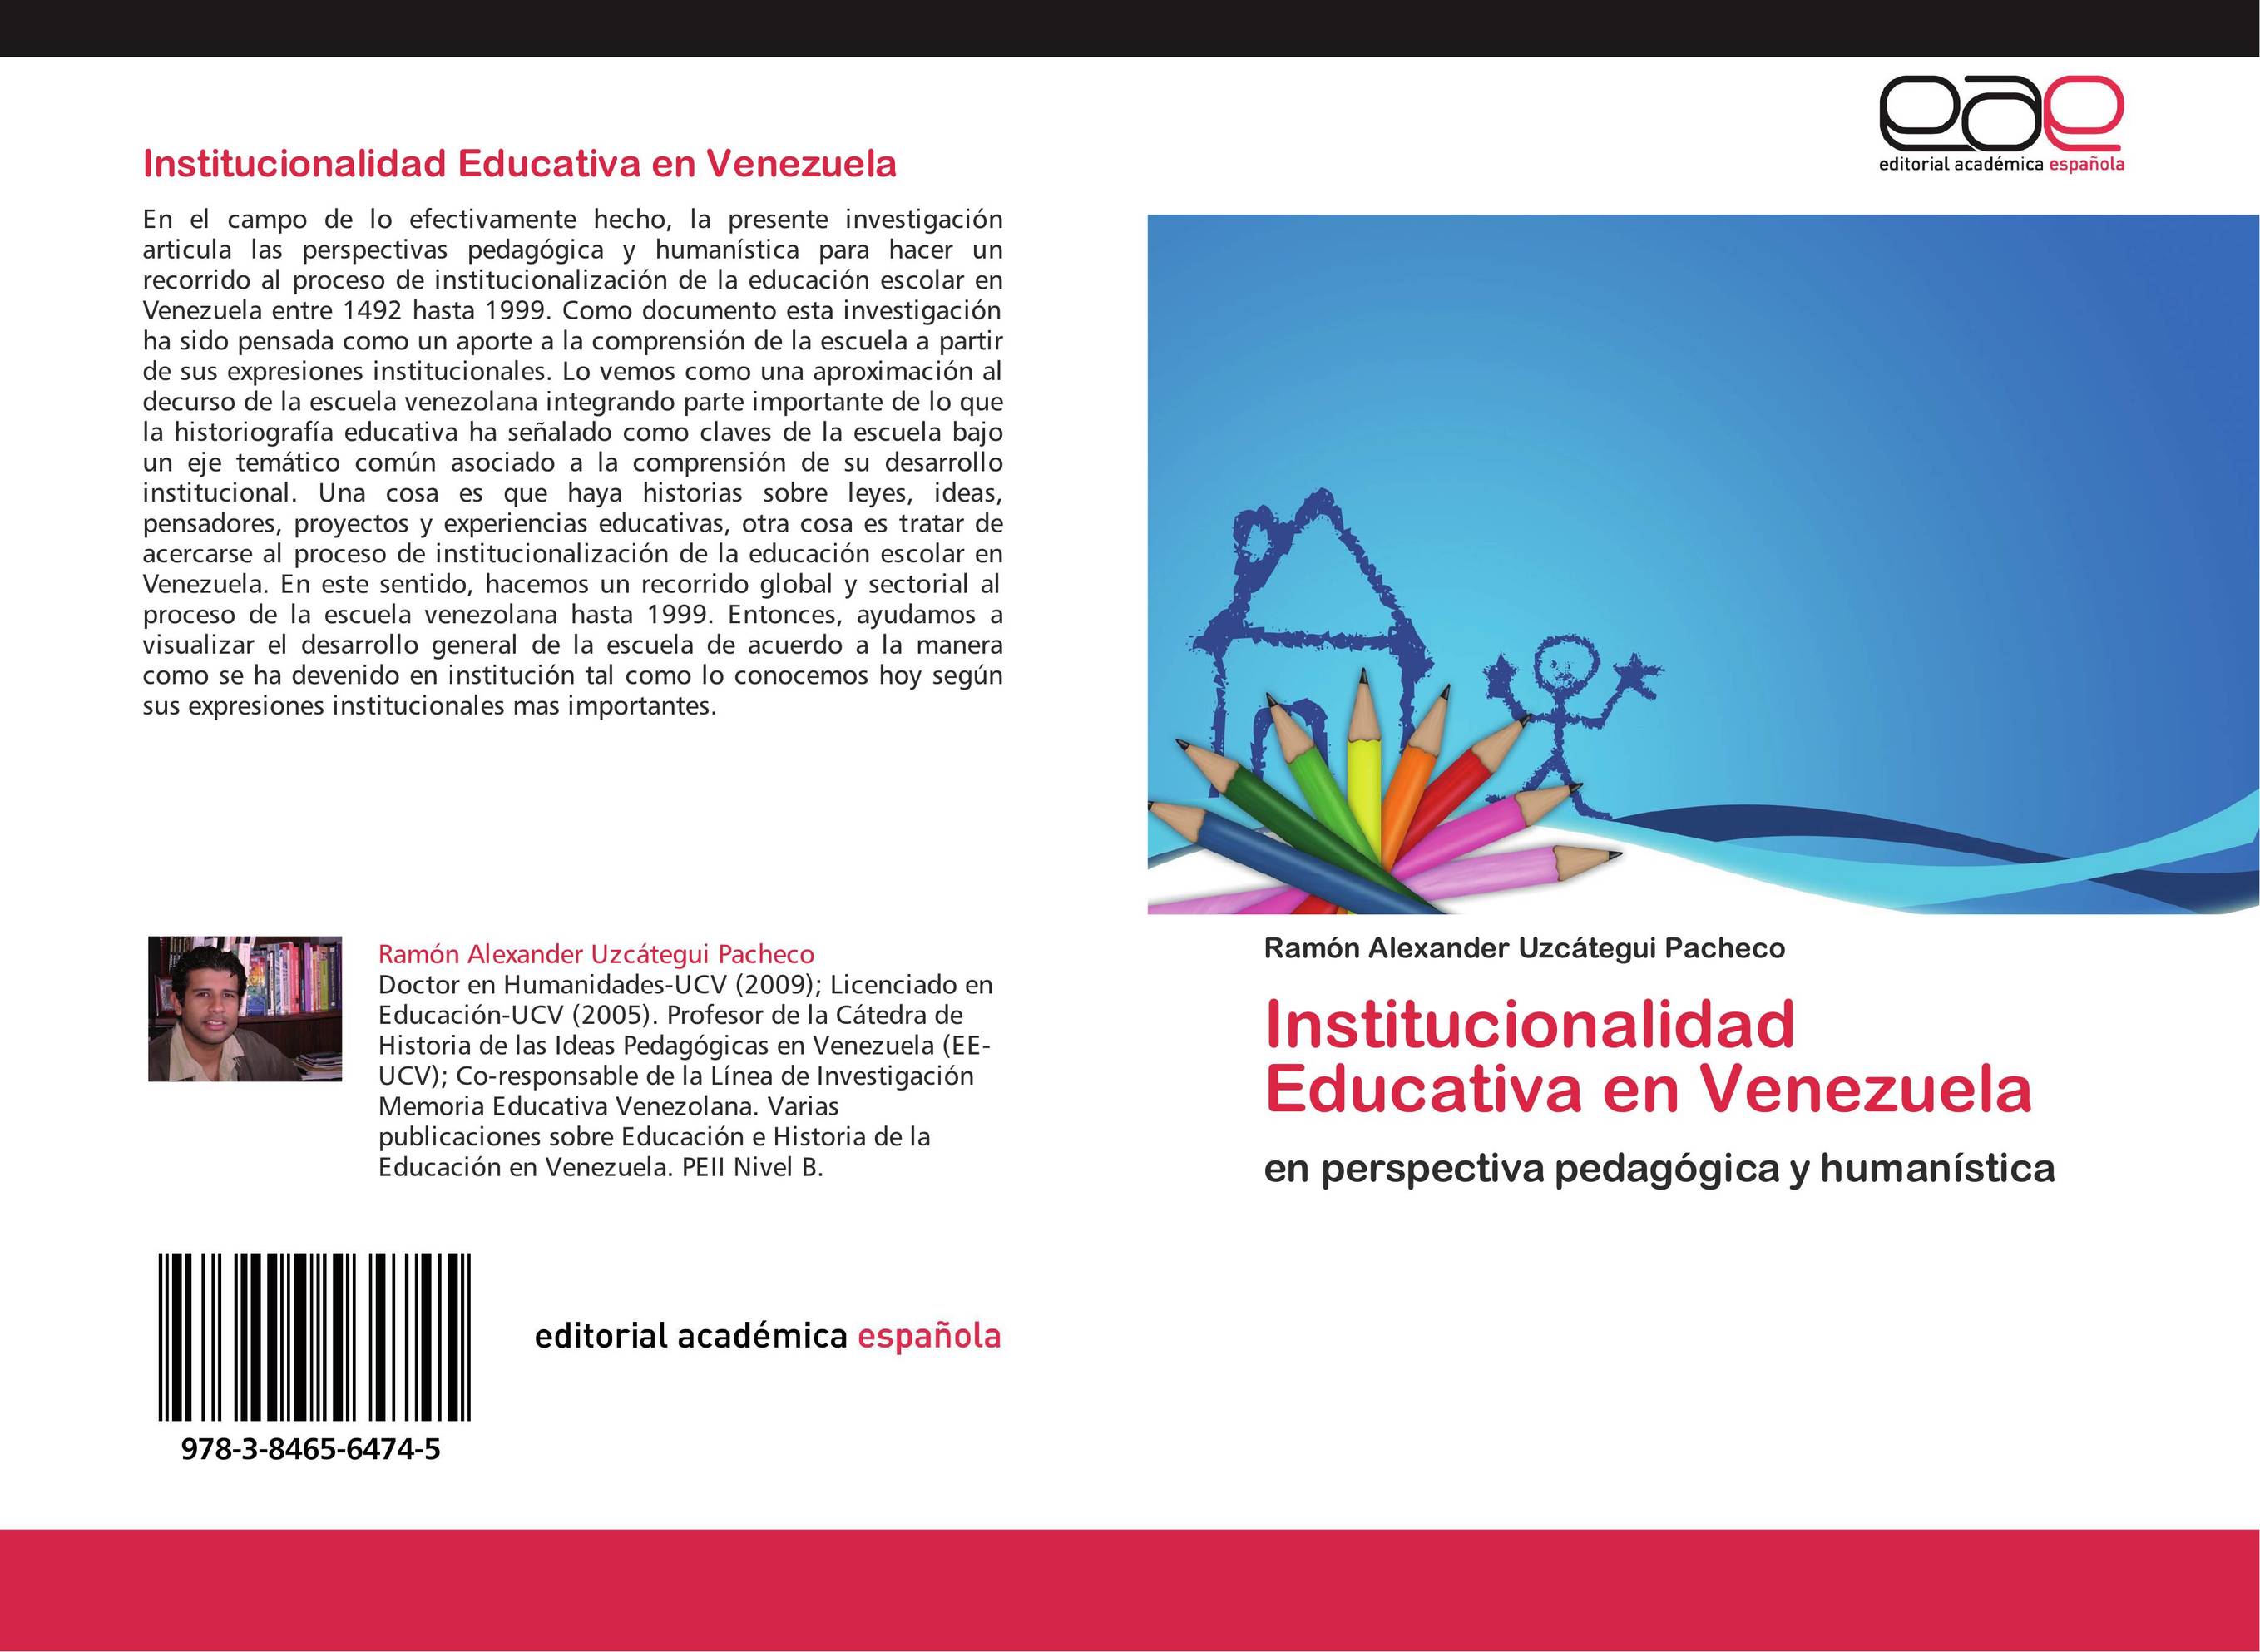 Institucionalidad Educativa en Venezuela